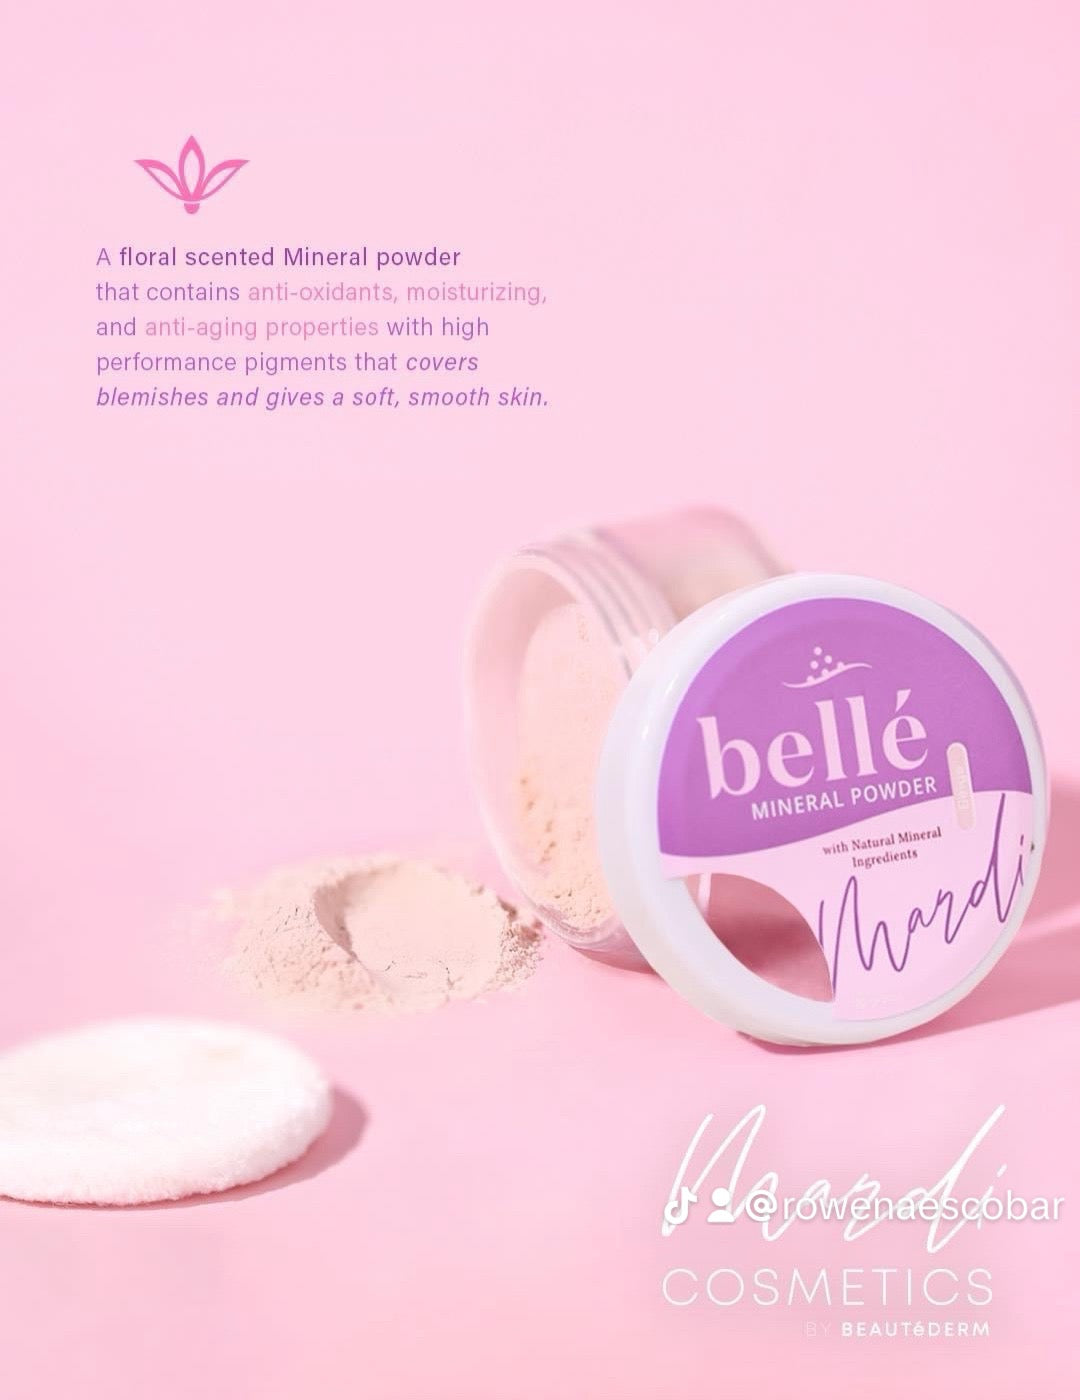 Belle Mineral Powder 10 grams  (Skintone or Beige)